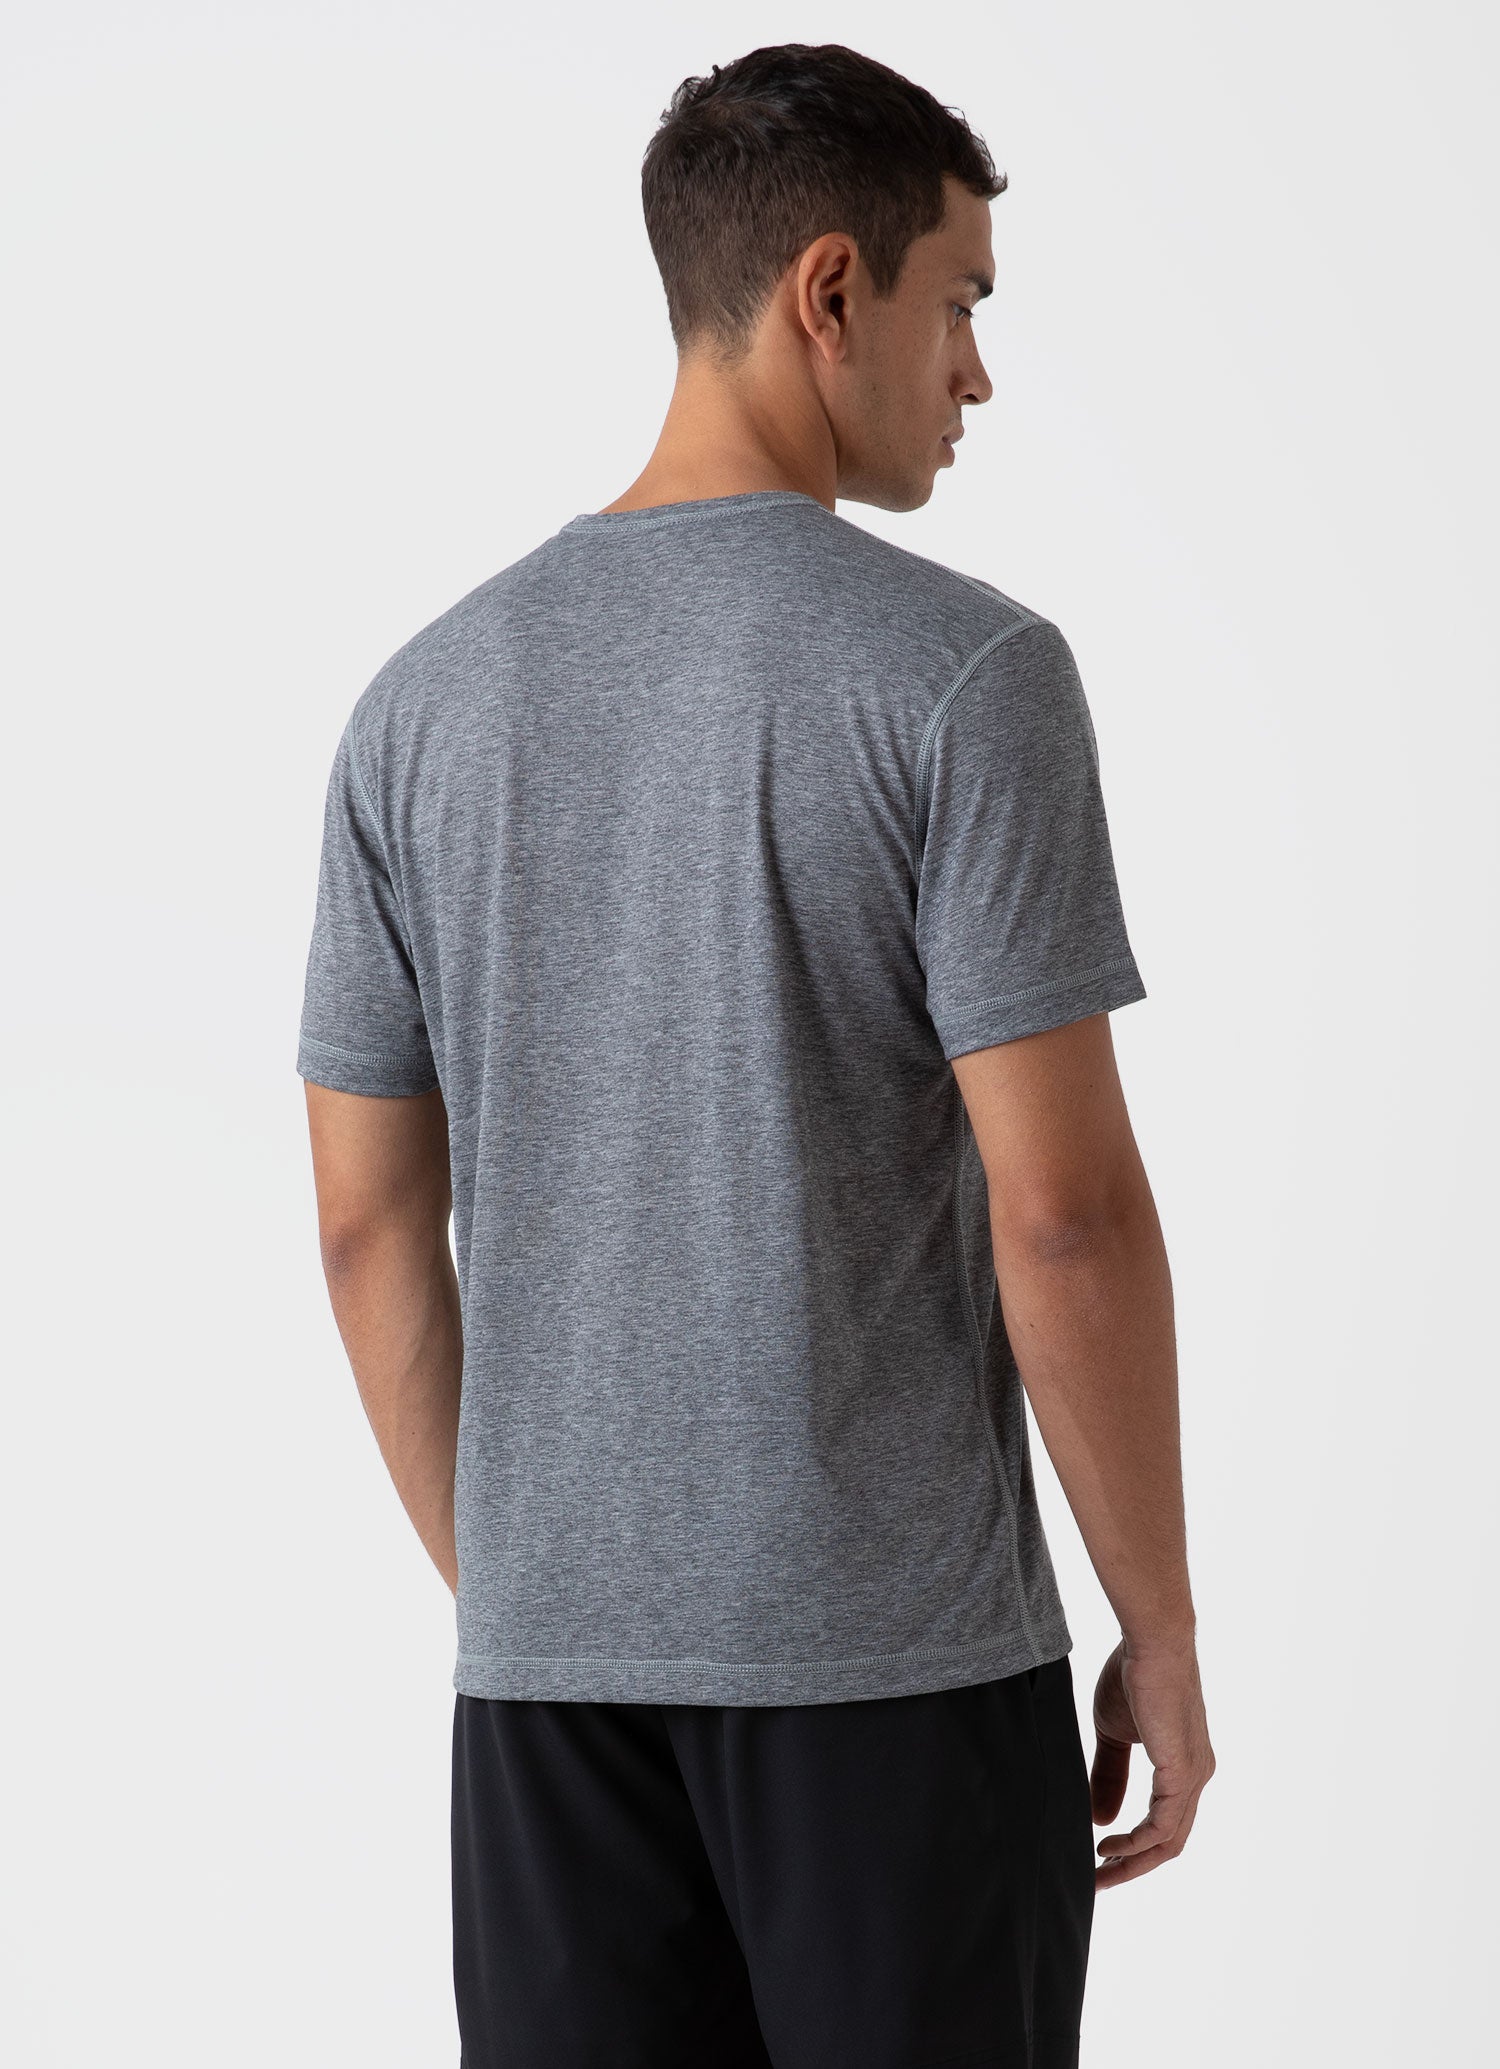 Men's DriRelease Active T-shirt in Grey Melange